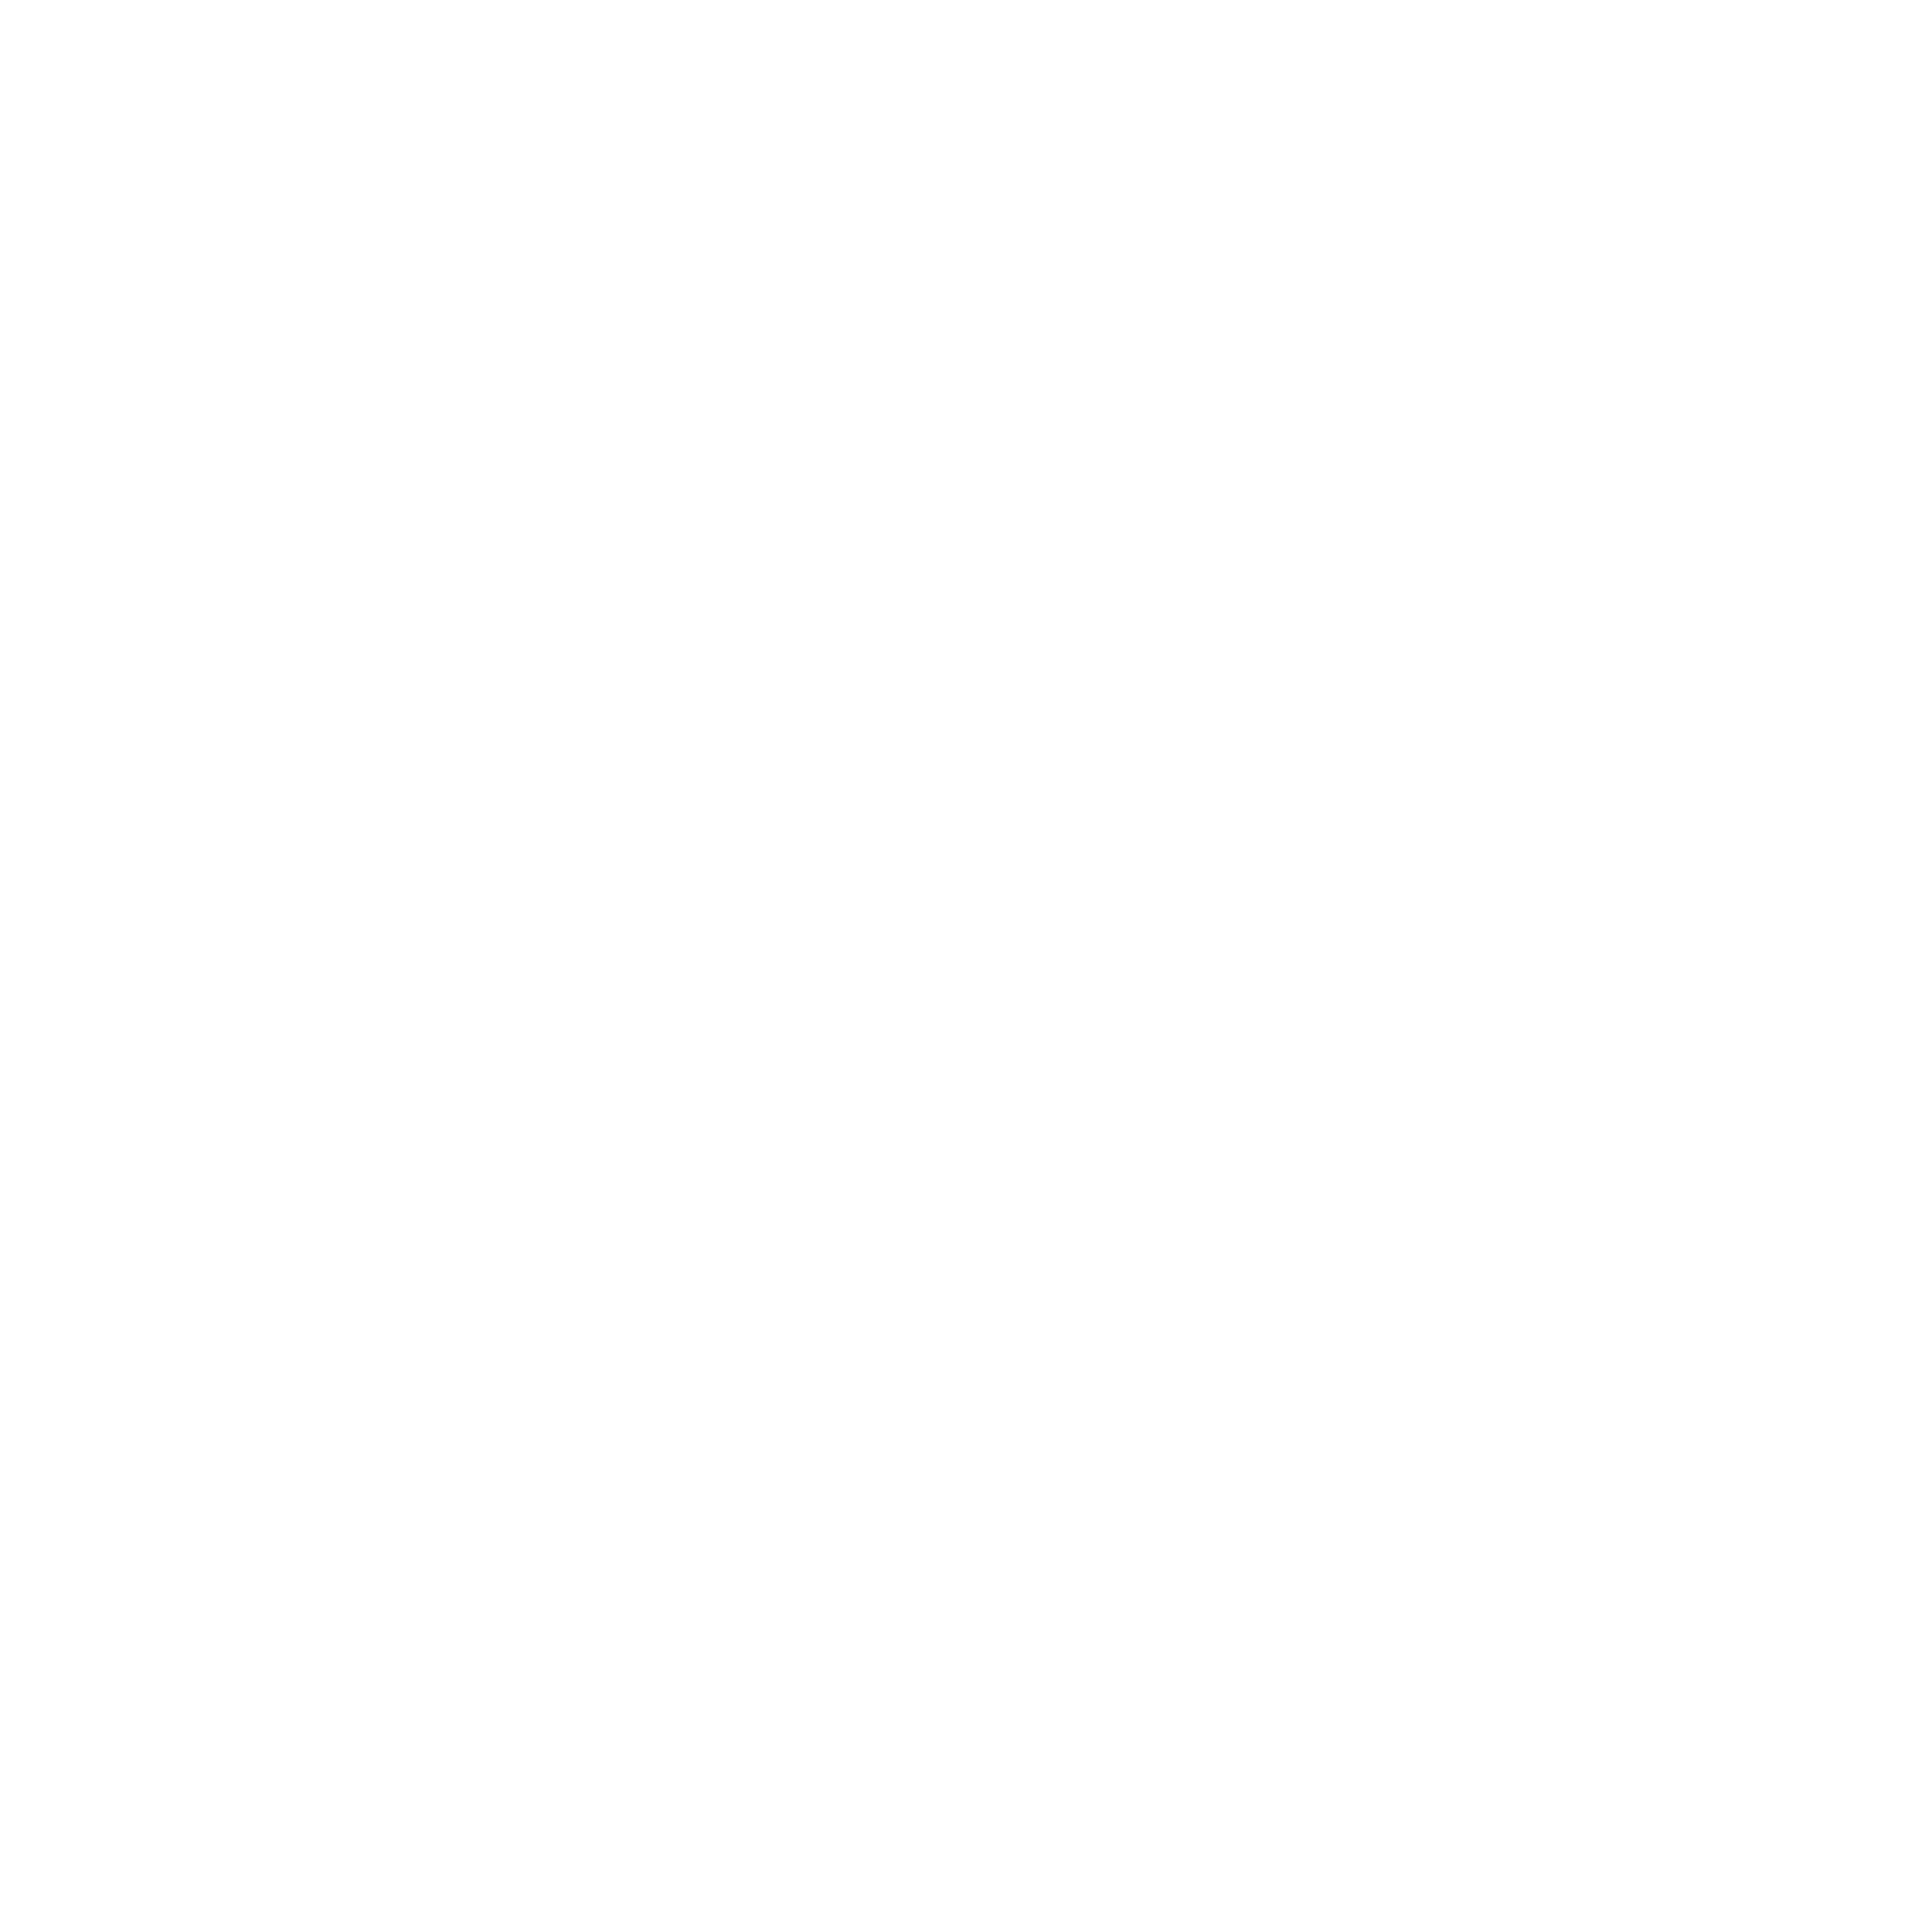 Logo UPRO